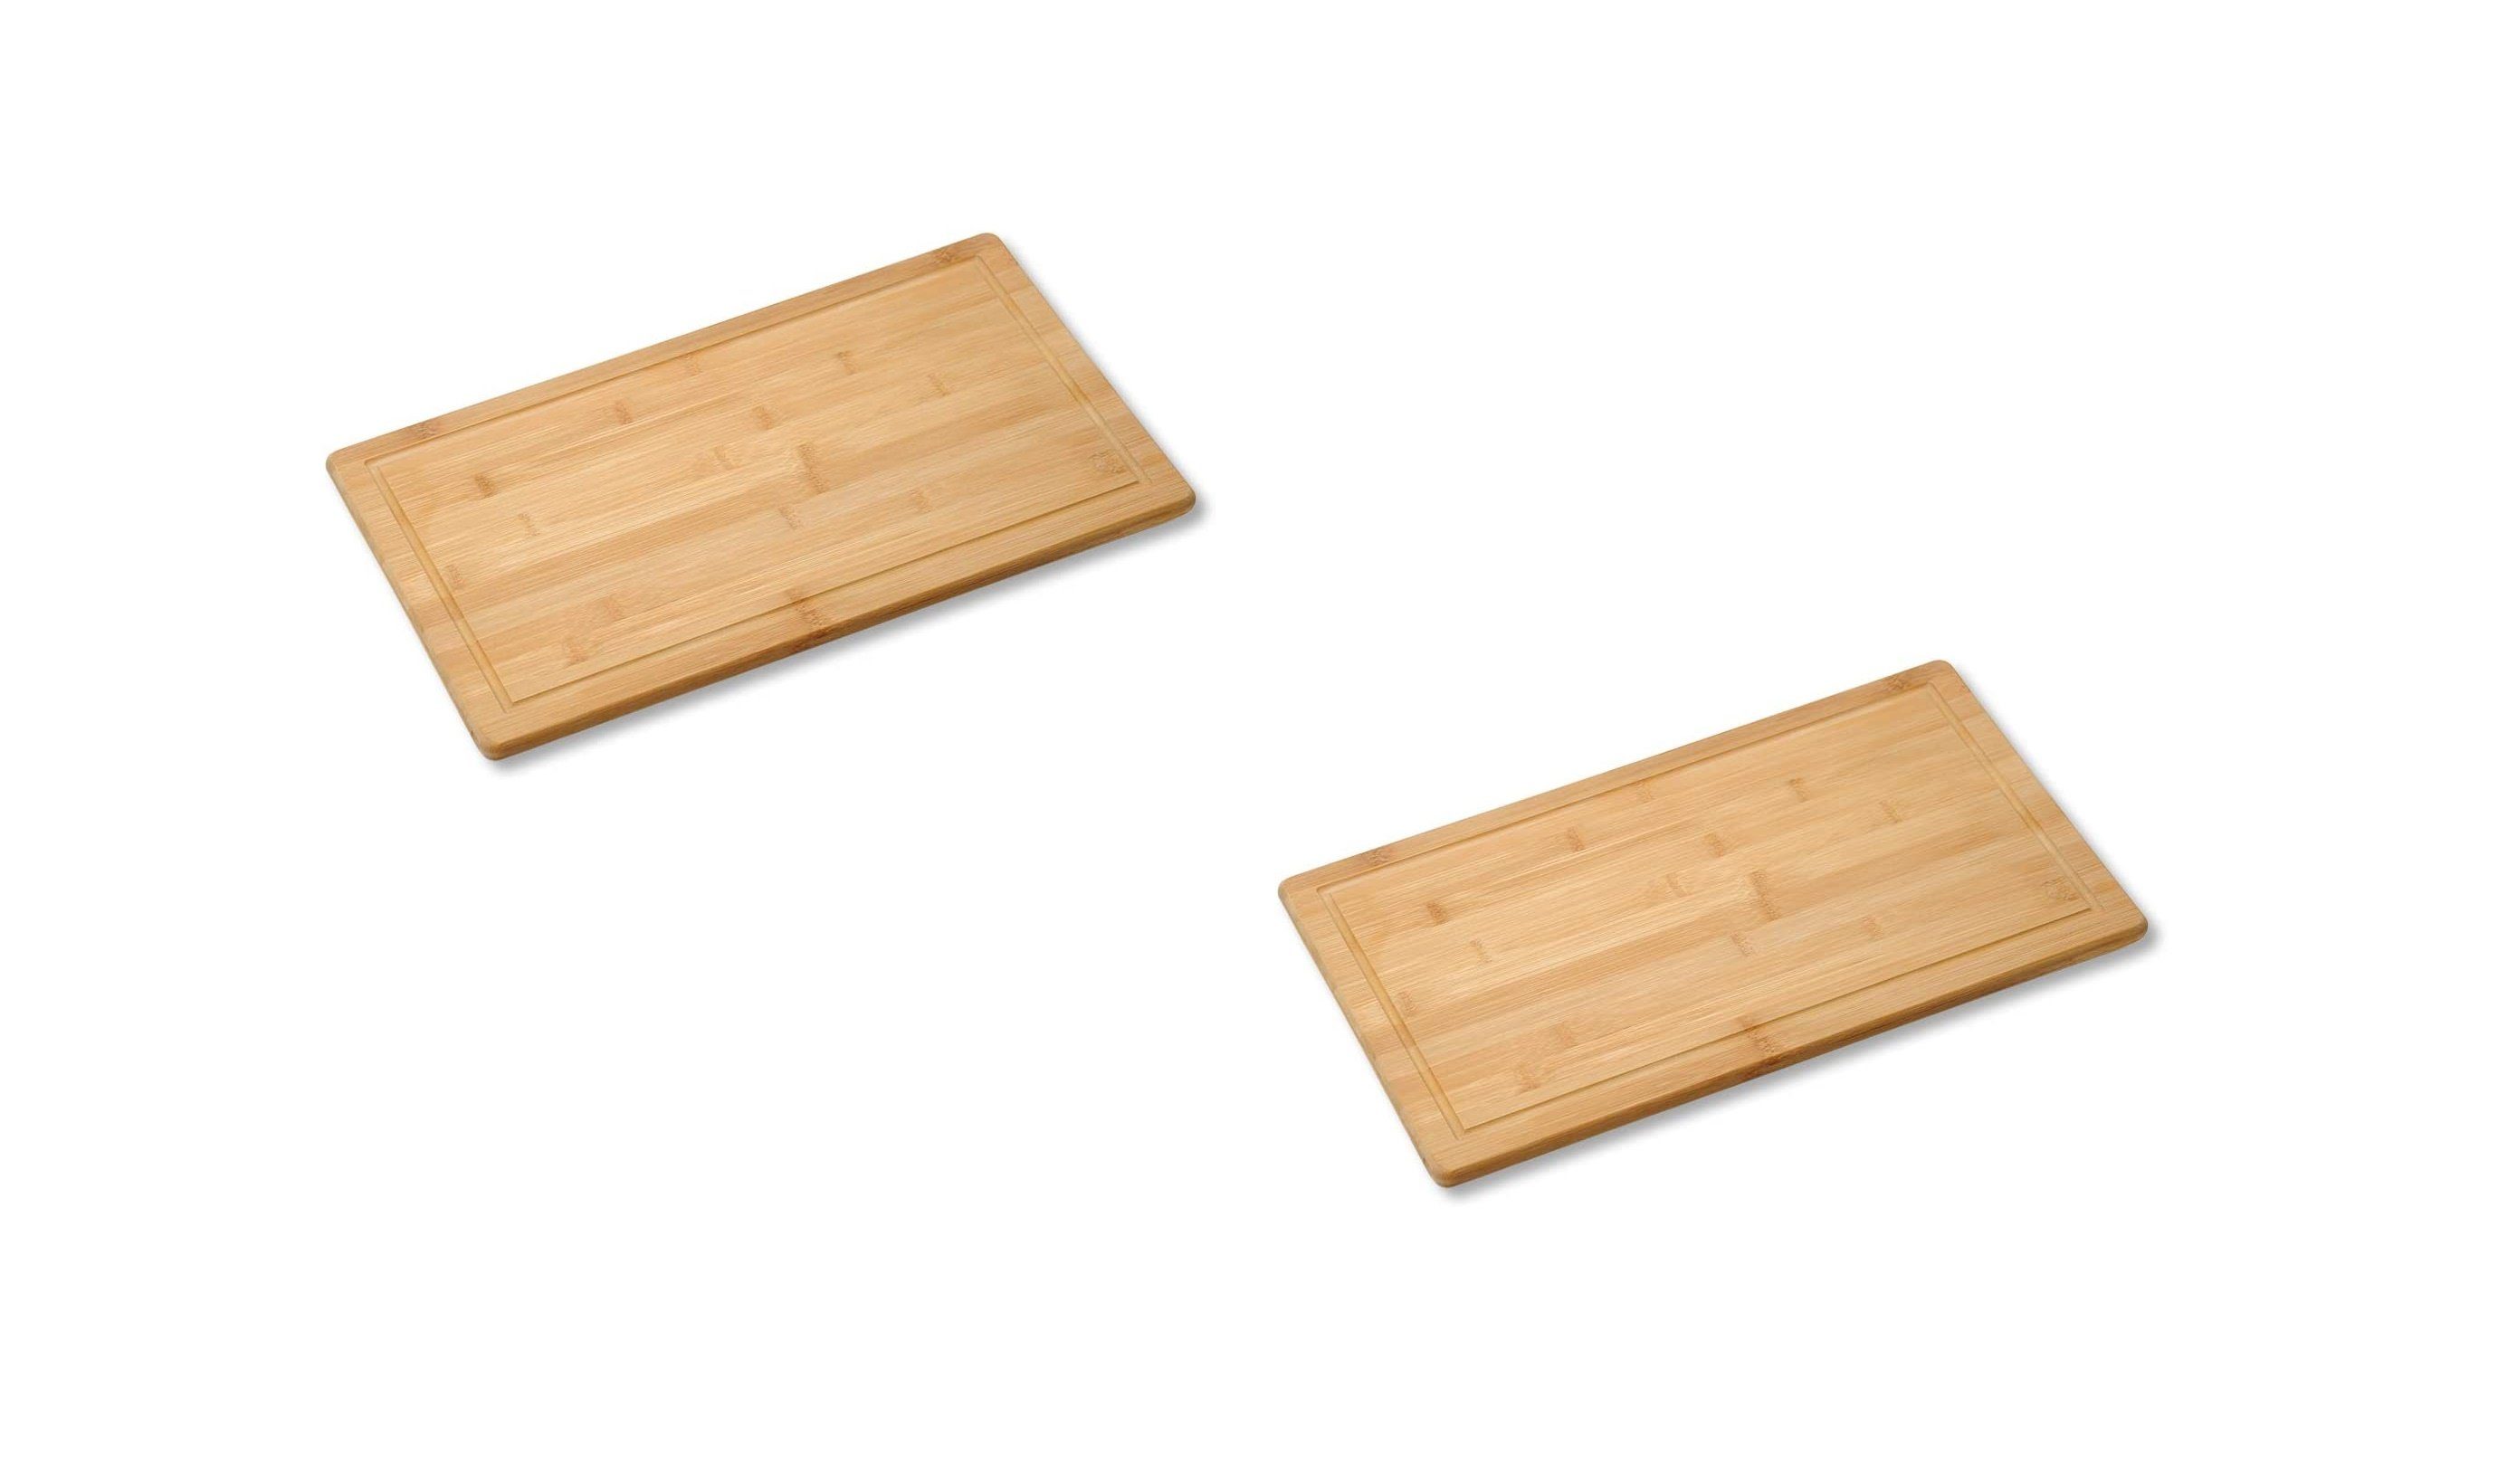 Neustanlo Schneide- und Abdeckplatte 2 Stück Schneide- und Abdeckplatte Bambusholz Holz 50x28x4 cm